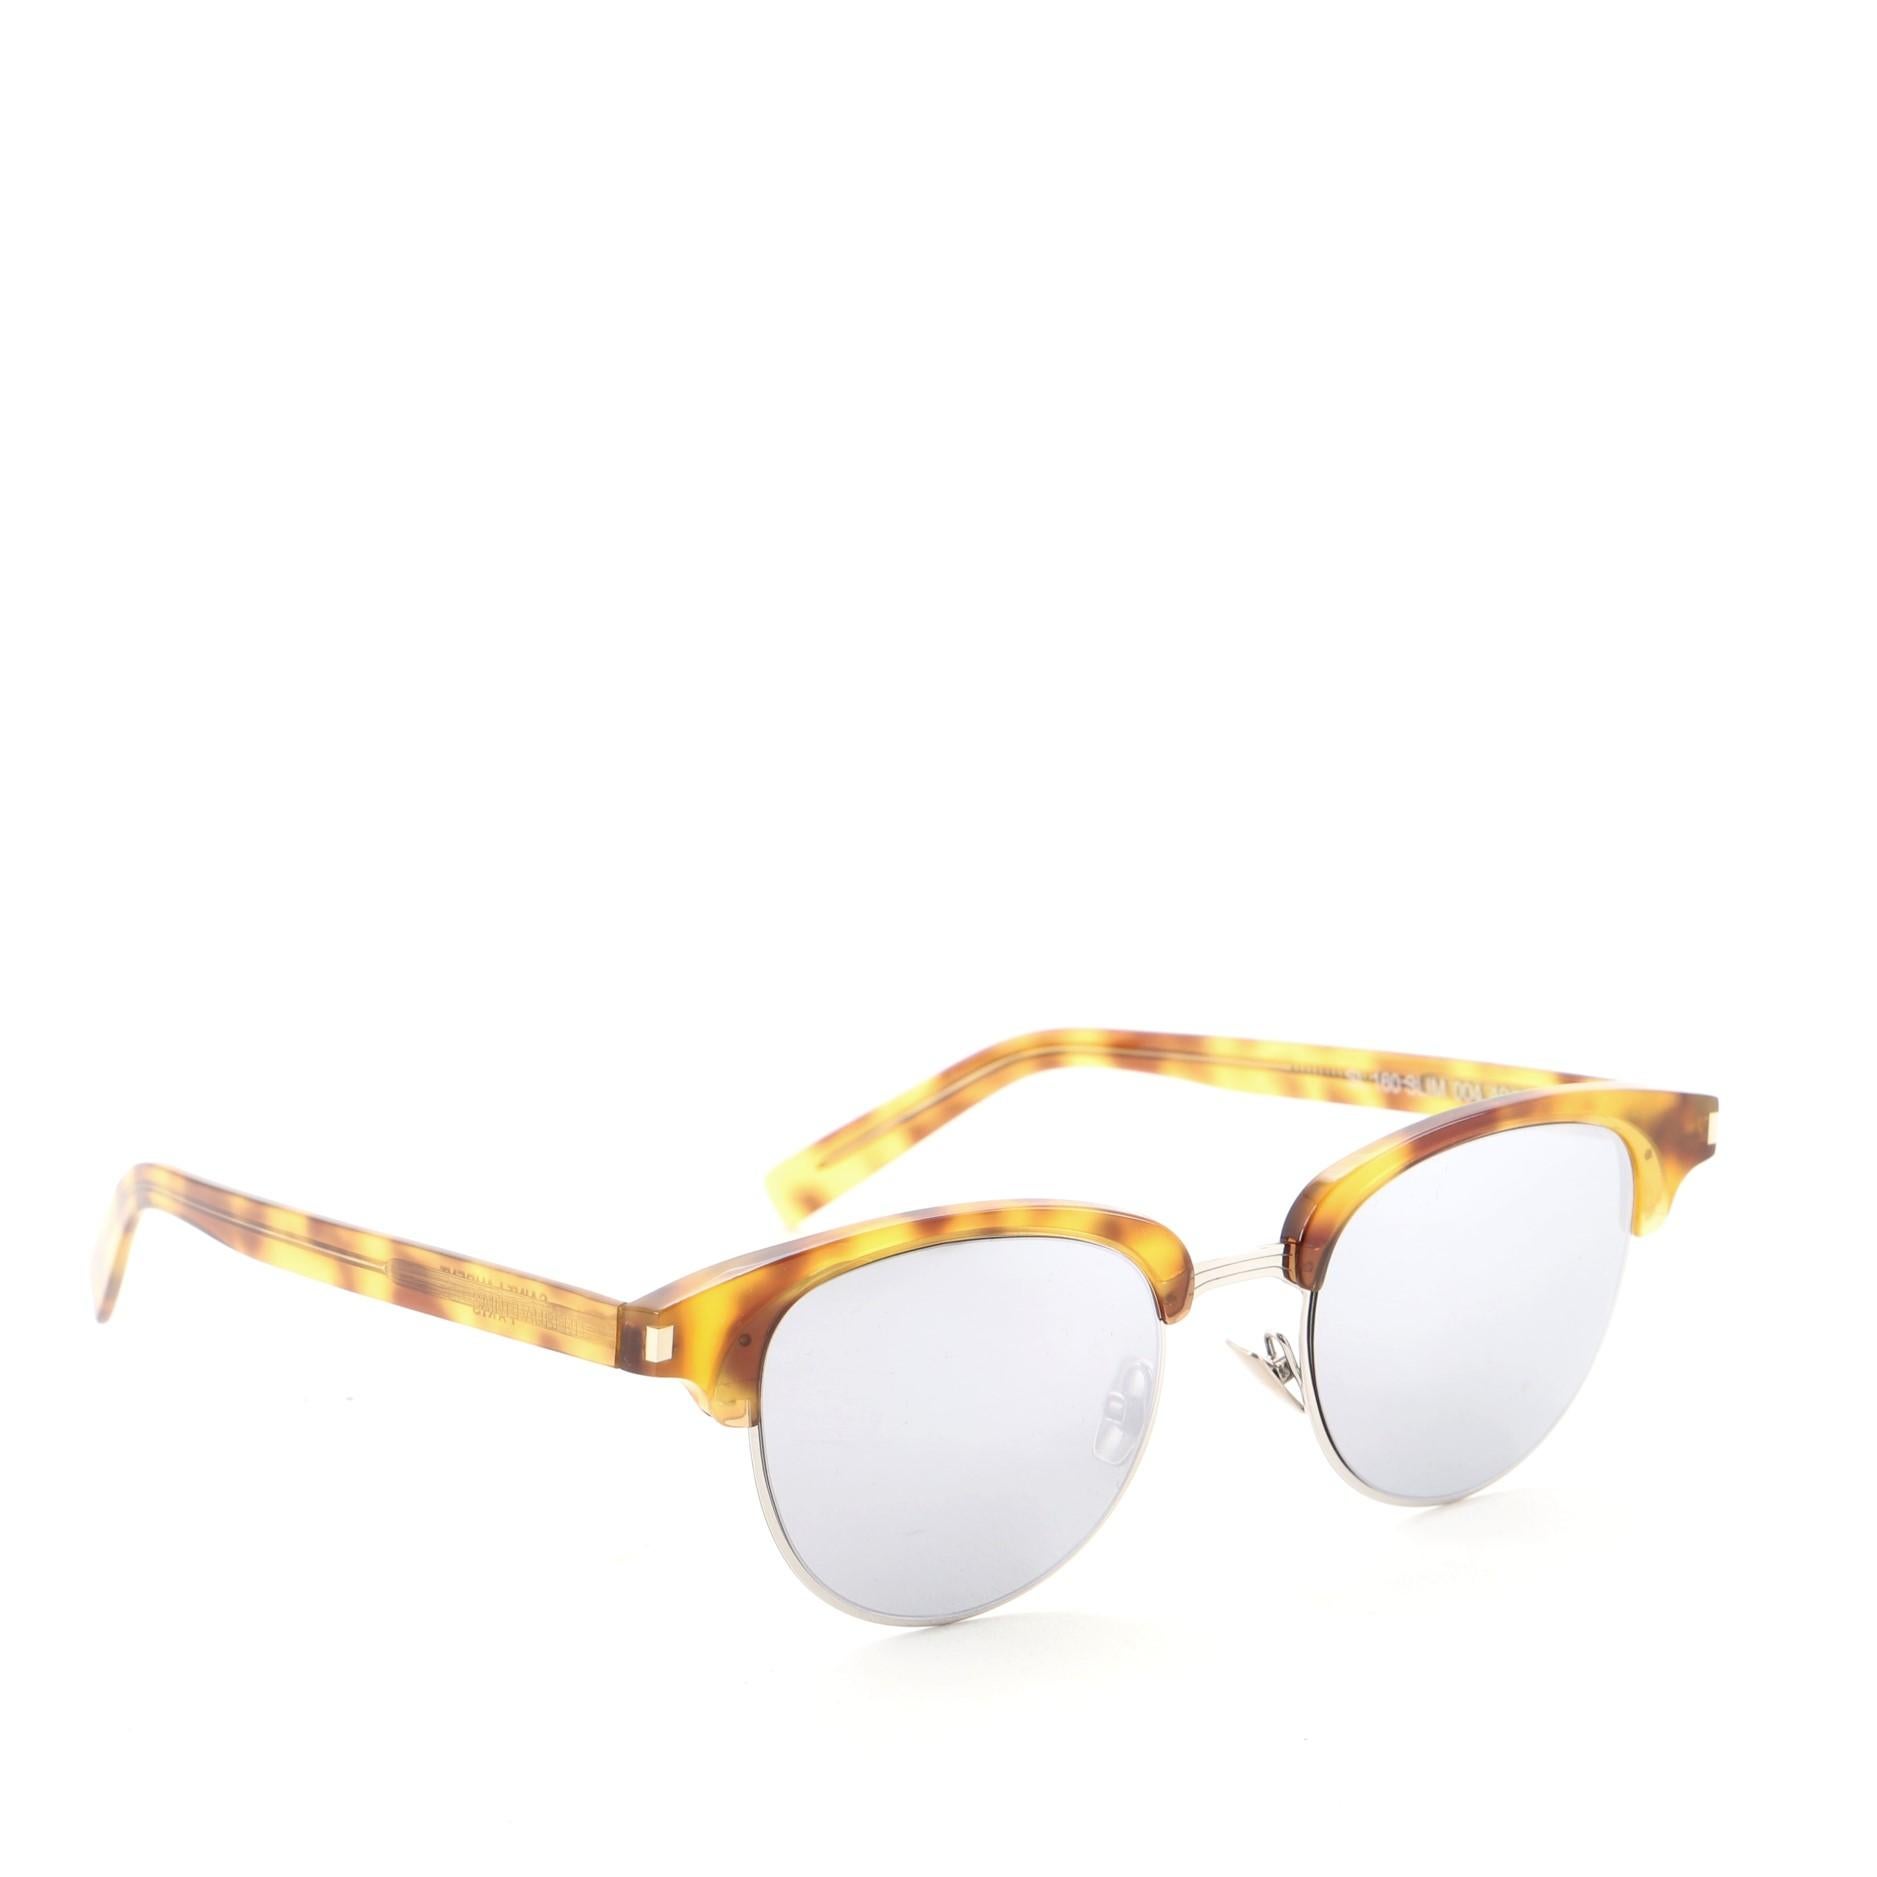 Saint Laurent Slim Wayfarer Sunglasses Tortoise Acetate
Brown

Condition Details: Faint scratches on temples, minimal wear on lenses.

52245MSC

Height 2.25